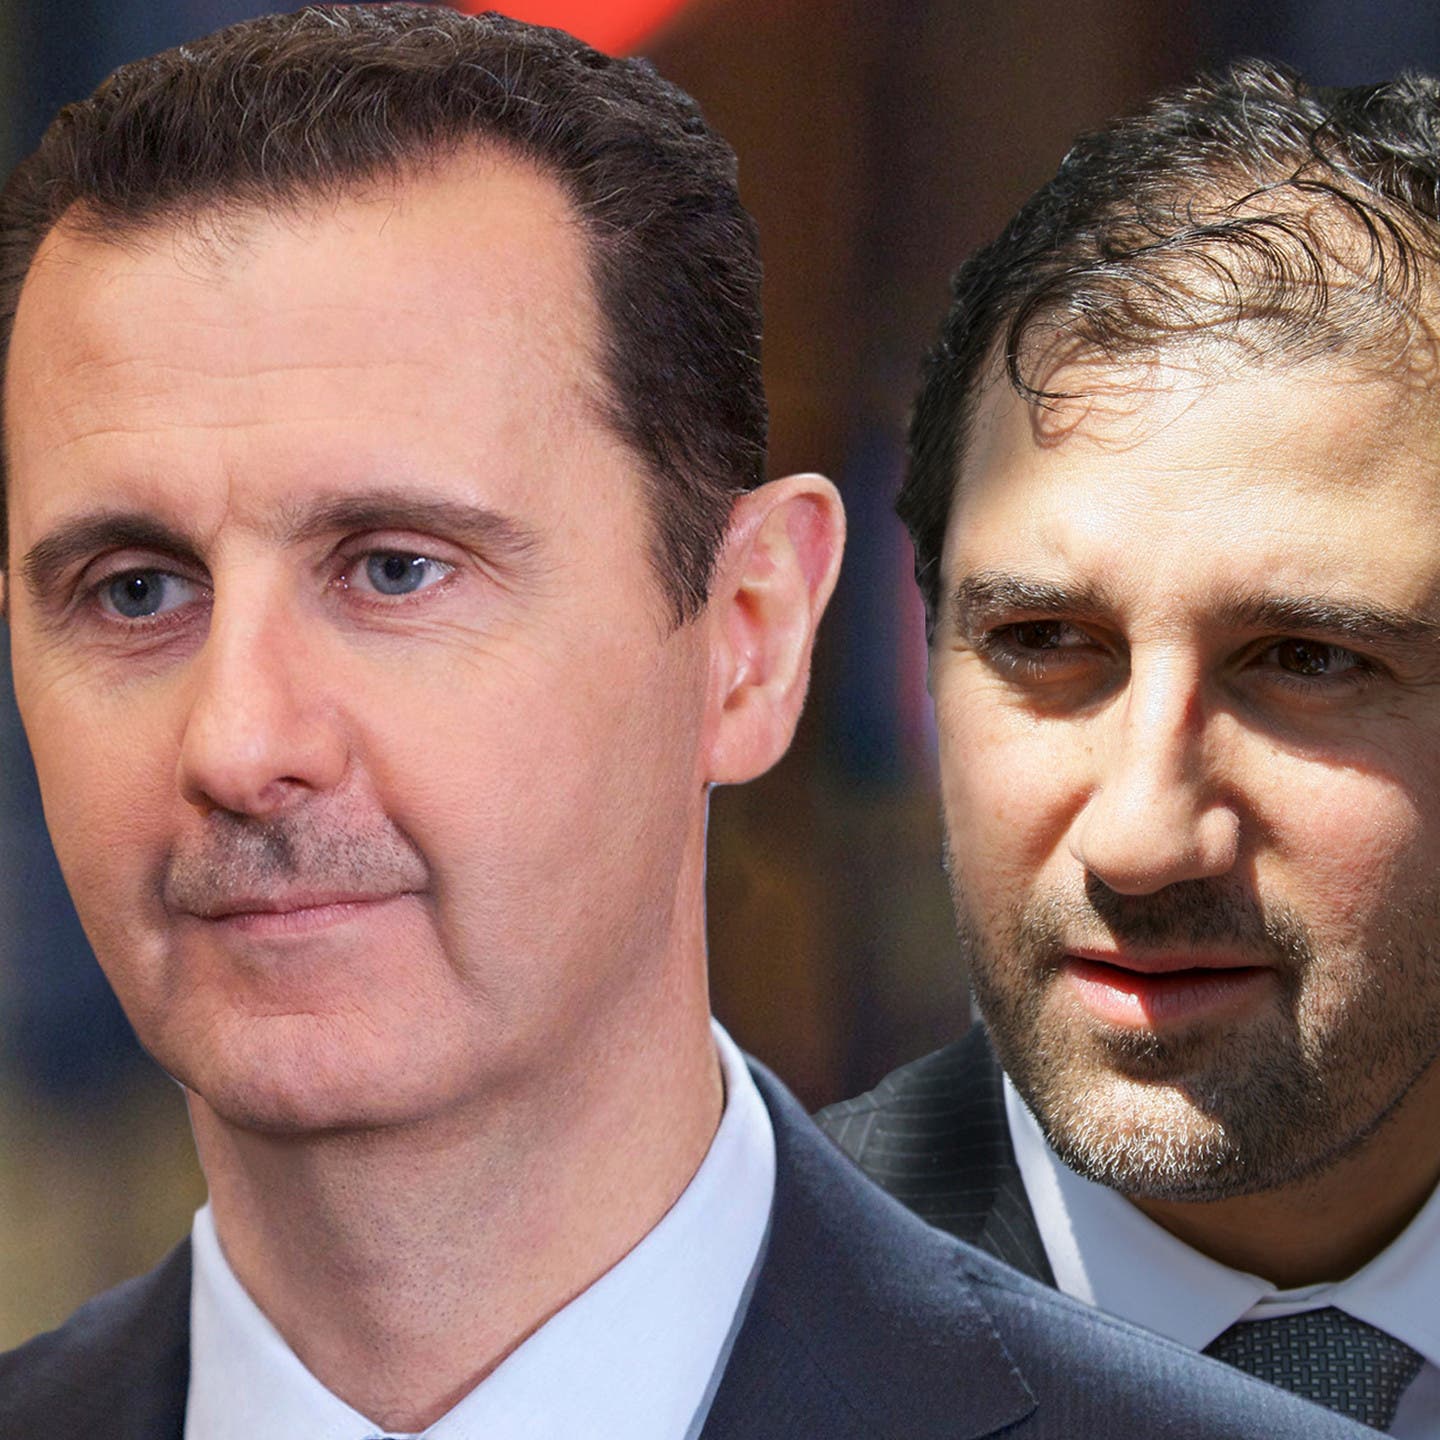 شركات وهمية.. بوابة رجال الأسد للتهرب من العقوبات